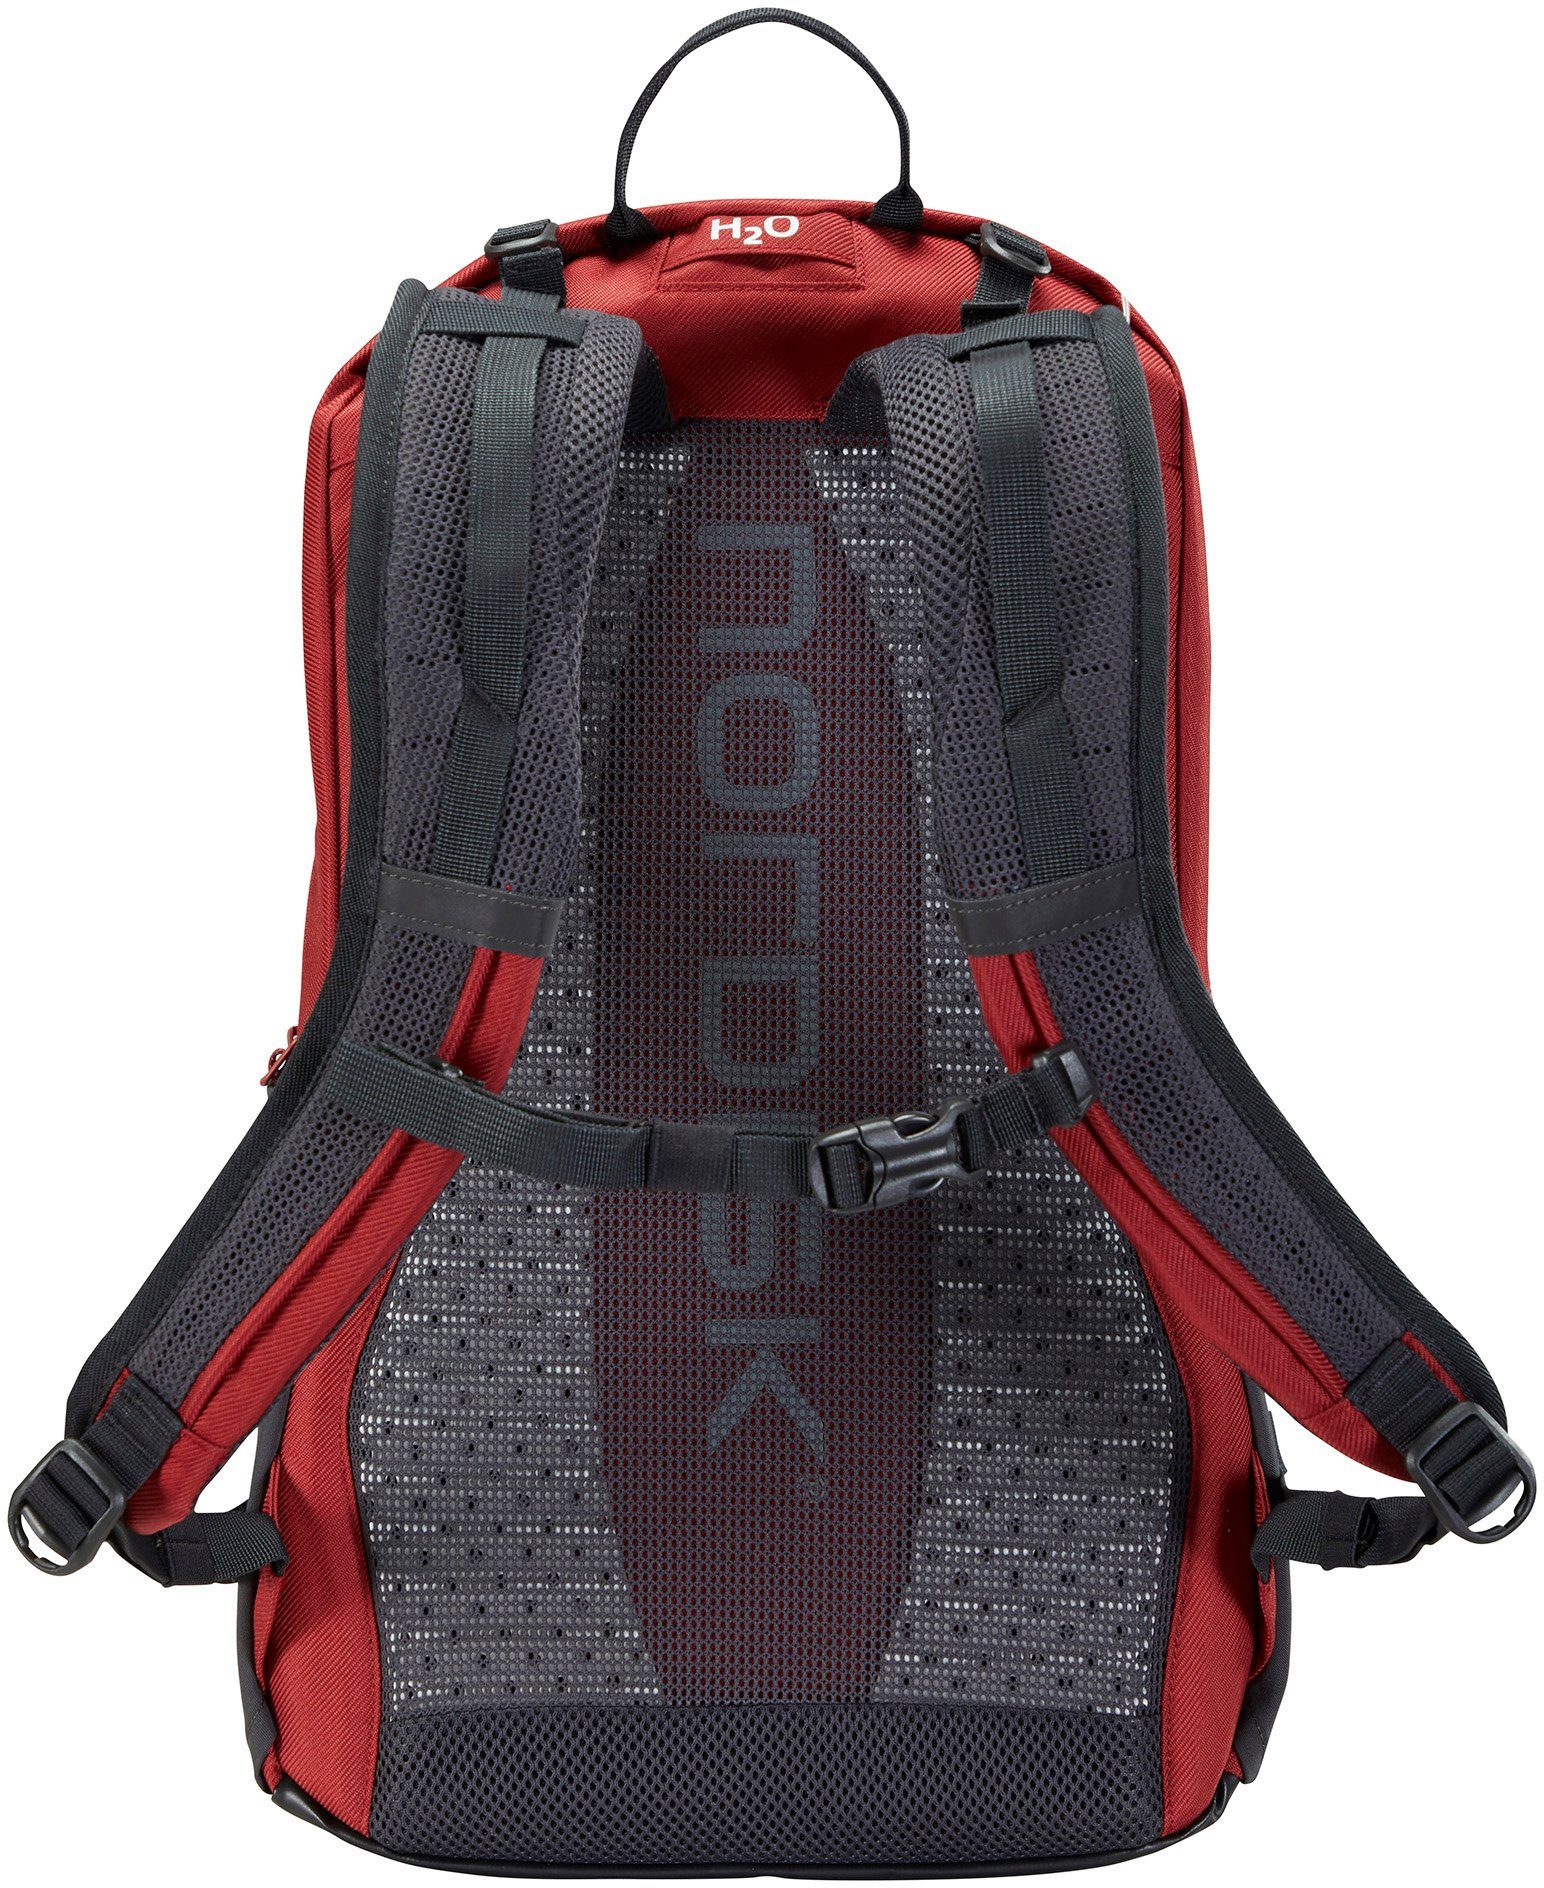 Tinn Nordisk Tourenrucksack Backpack Red 24 Burnt